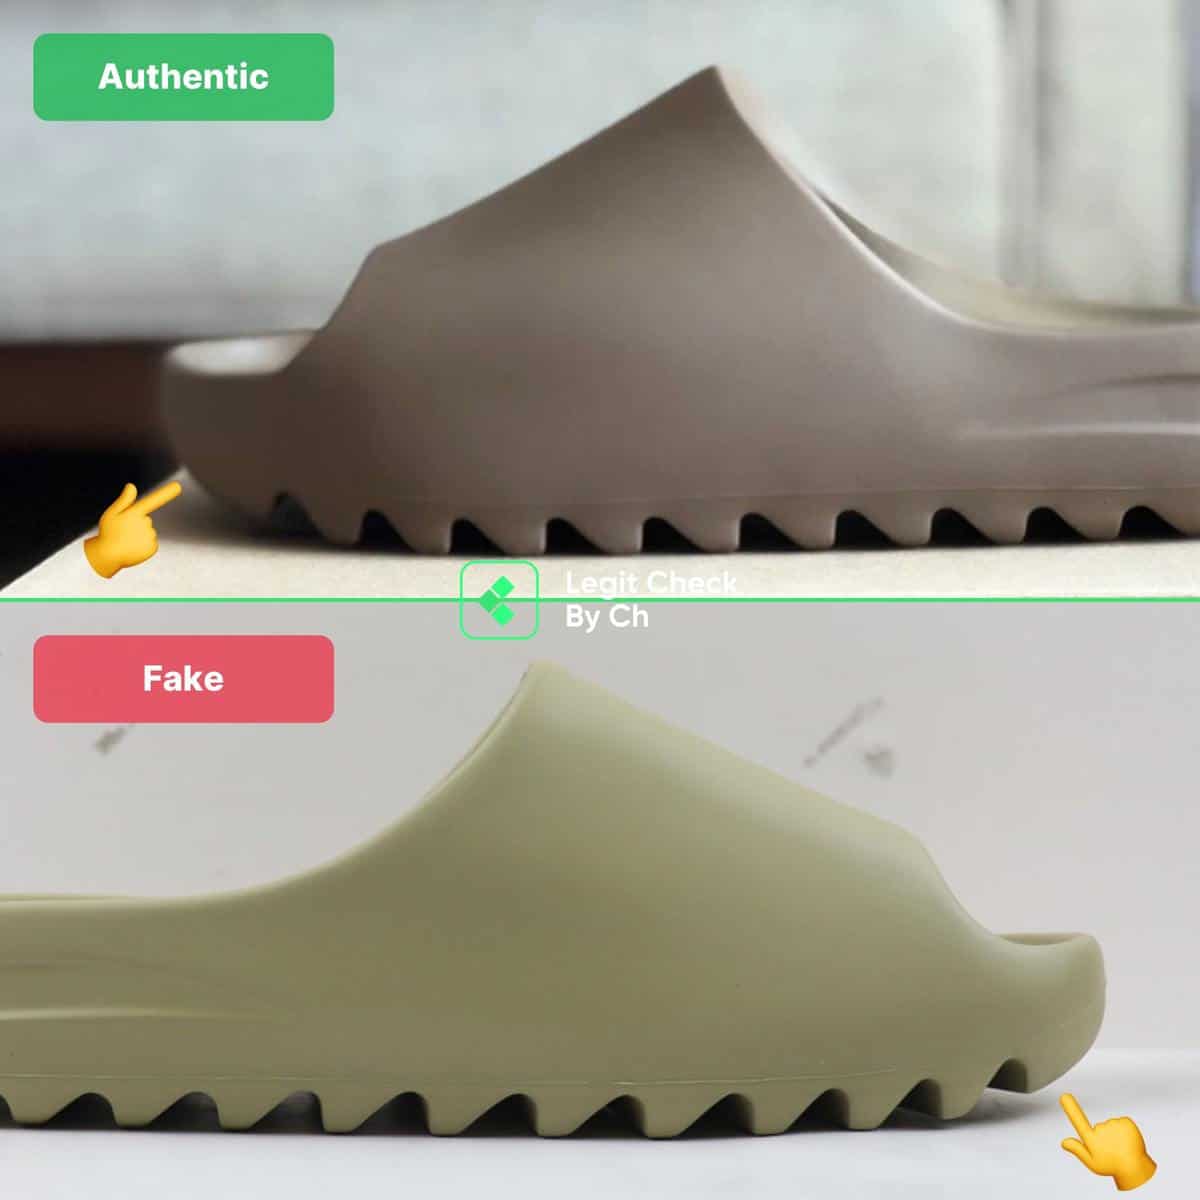 adidas YEEZY Slides, Authenticity Guaranteed